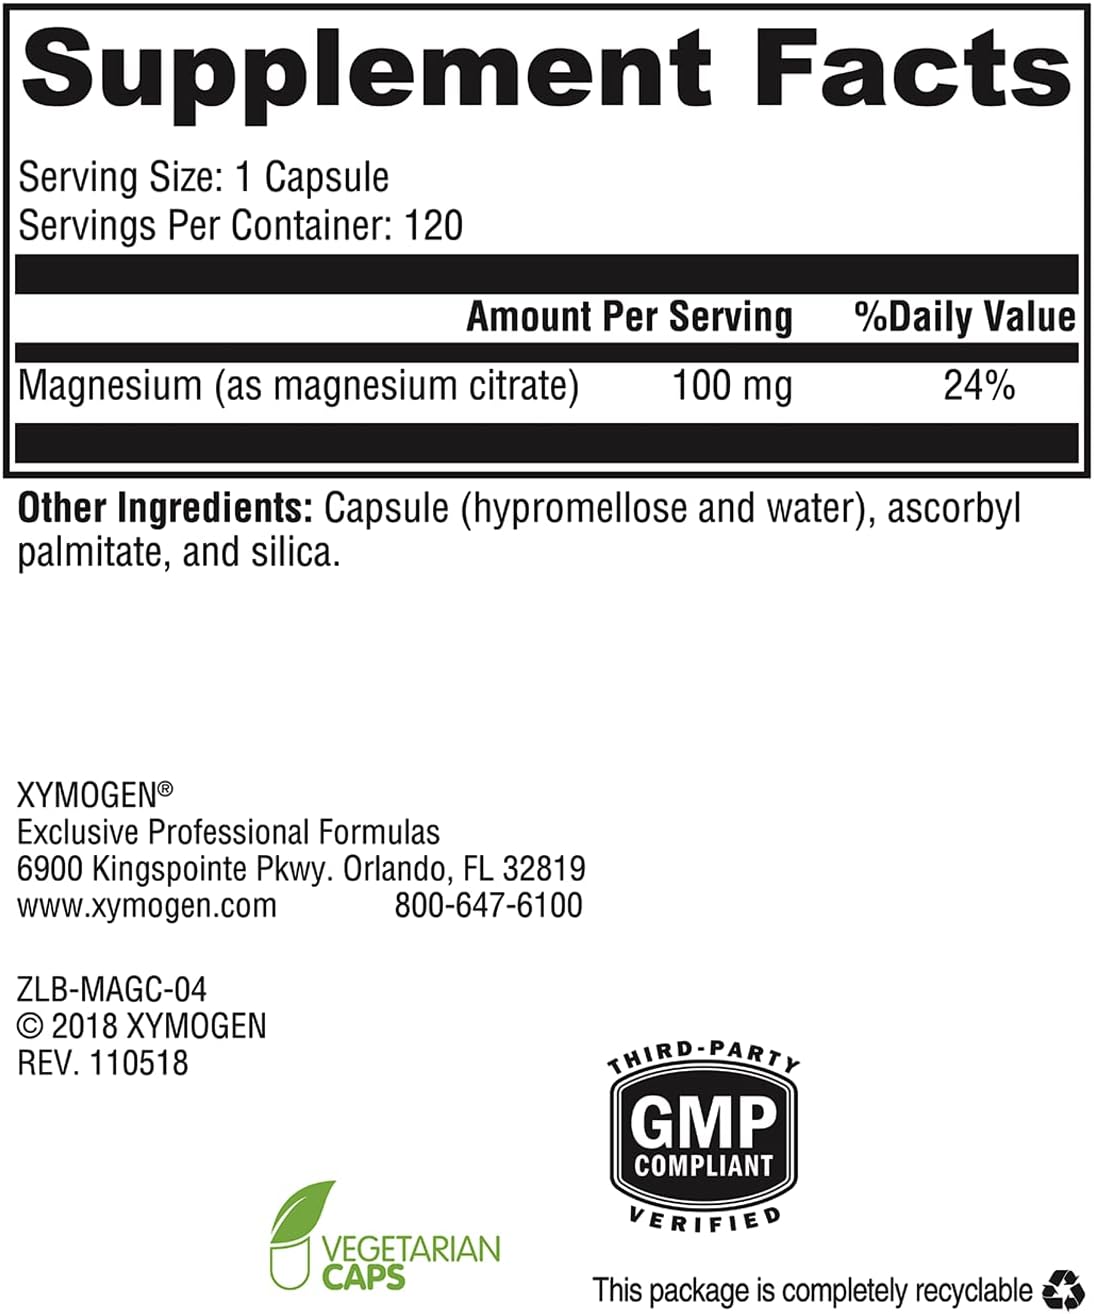 XYMOGEN Magnesium Citrate Capsules - Vegan Magnesium Supplement for Wo